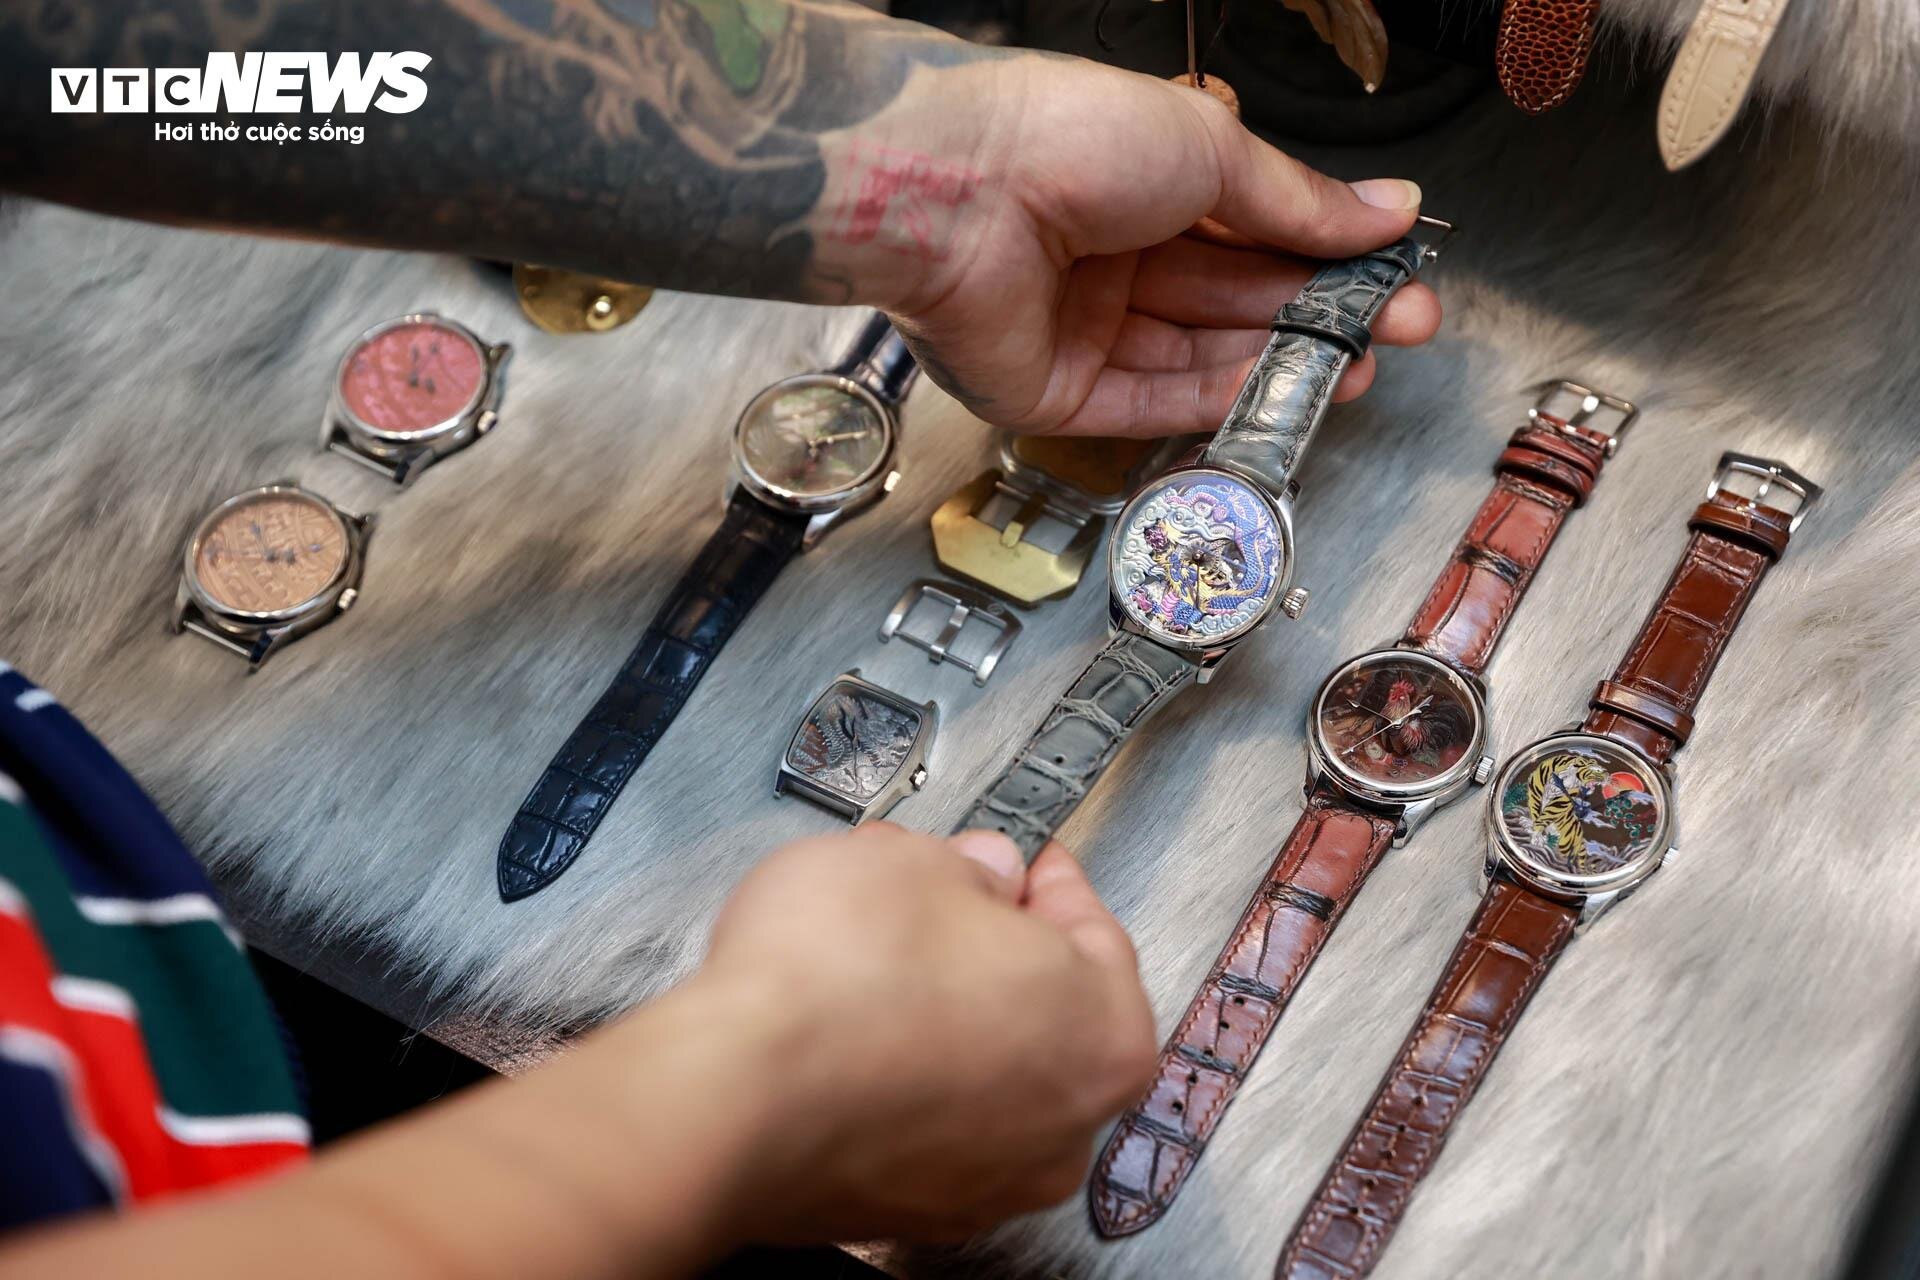 Chiếc đồng hồ bằng titan được thợ thủ công Việt định giá 300 triệu đồng - 13